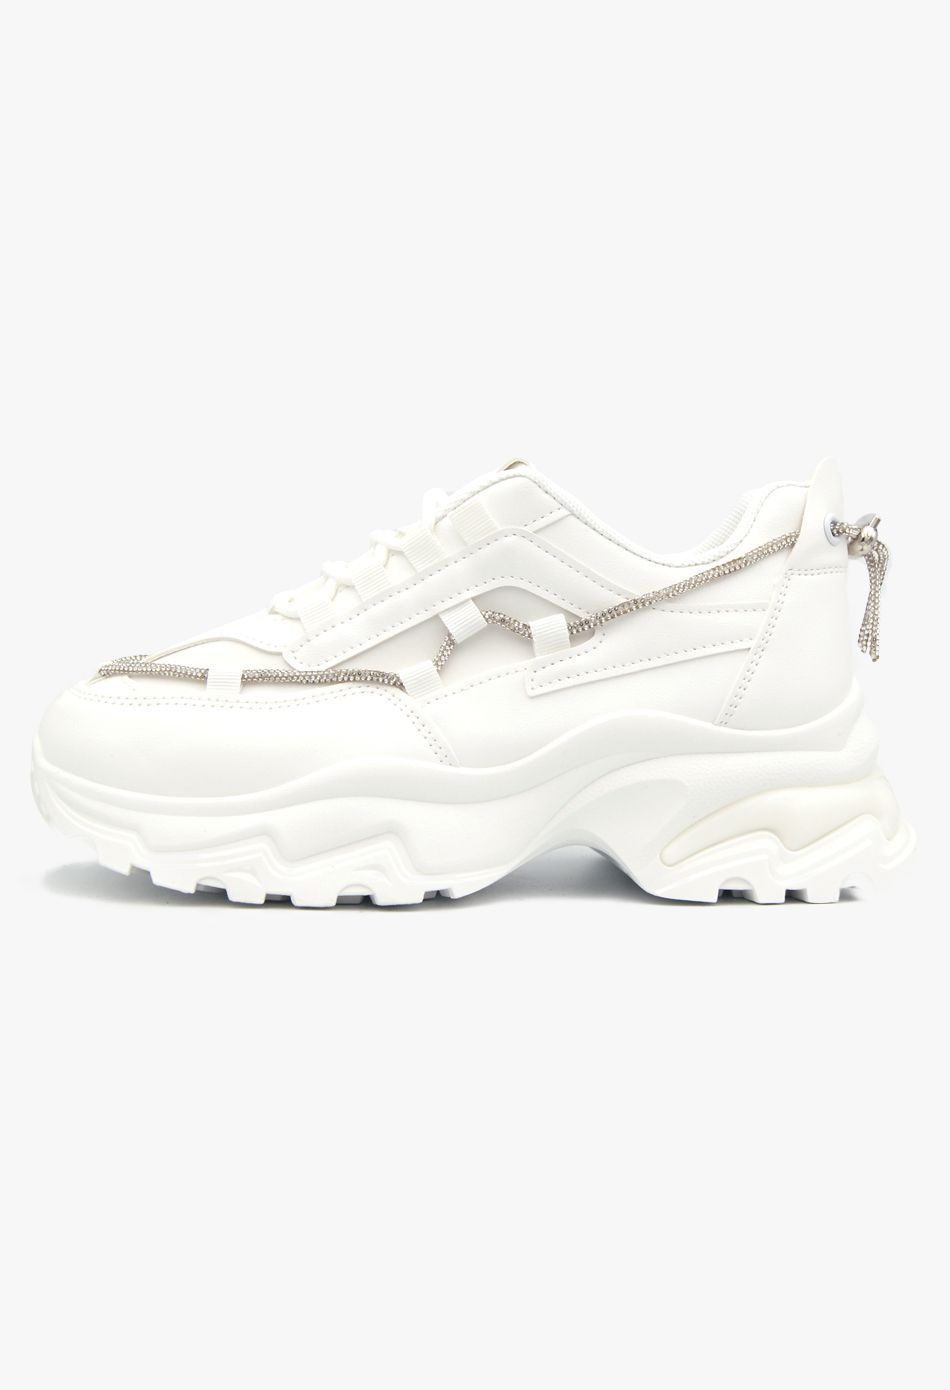 Γυναικείο Αθλητικό Chunky Sneaker με Strass λευκό / C2120-white Γυναικεία Αθλητικά και Sneakers joya.gr